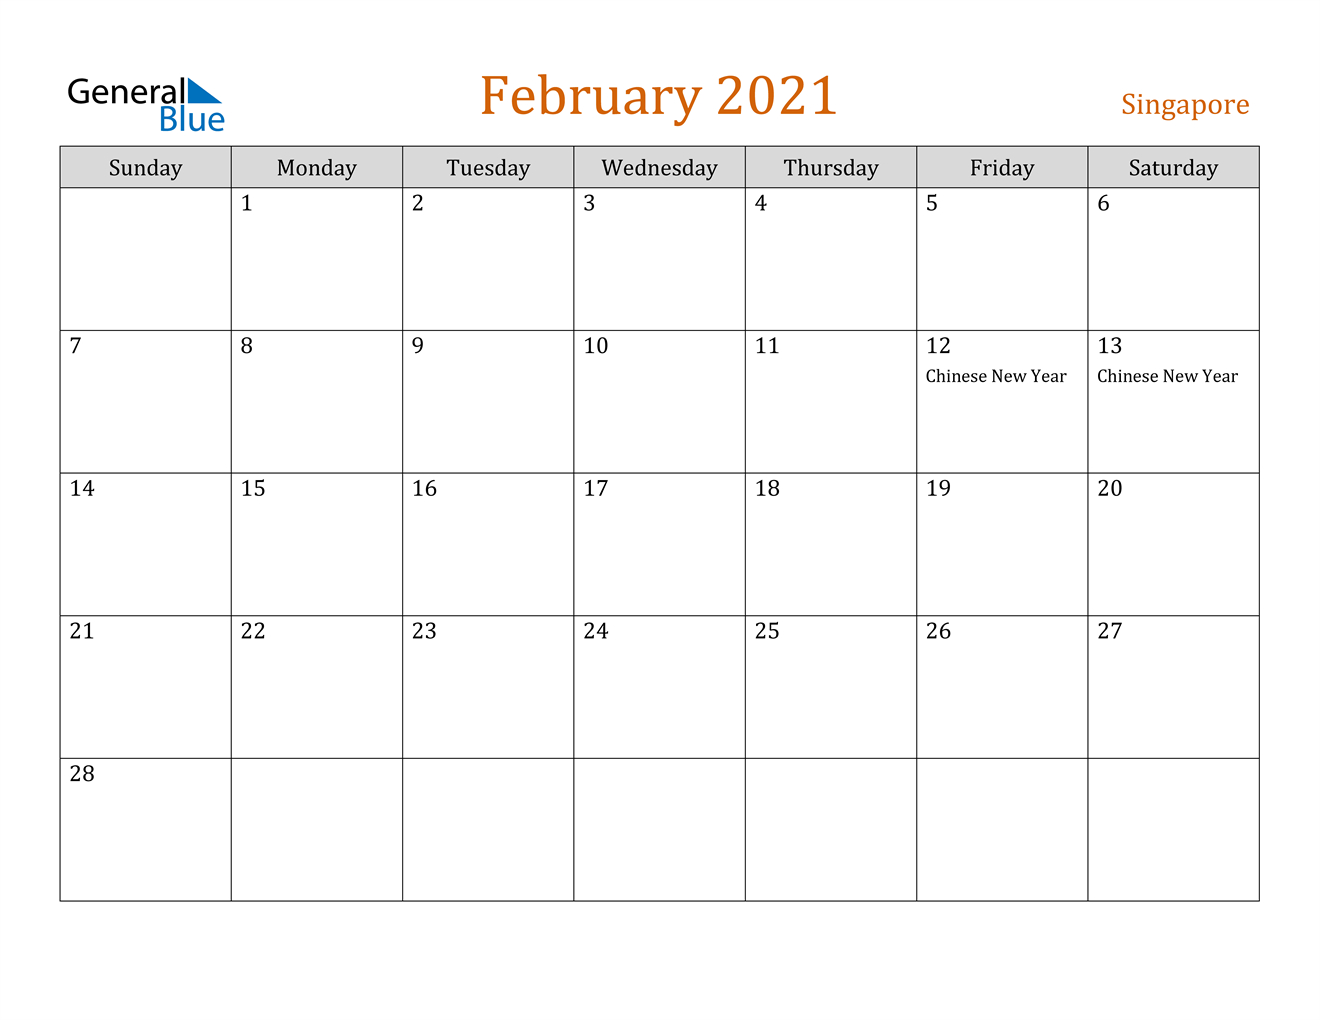 February 2021 Calendar - Singapore-February 2021 Calendar